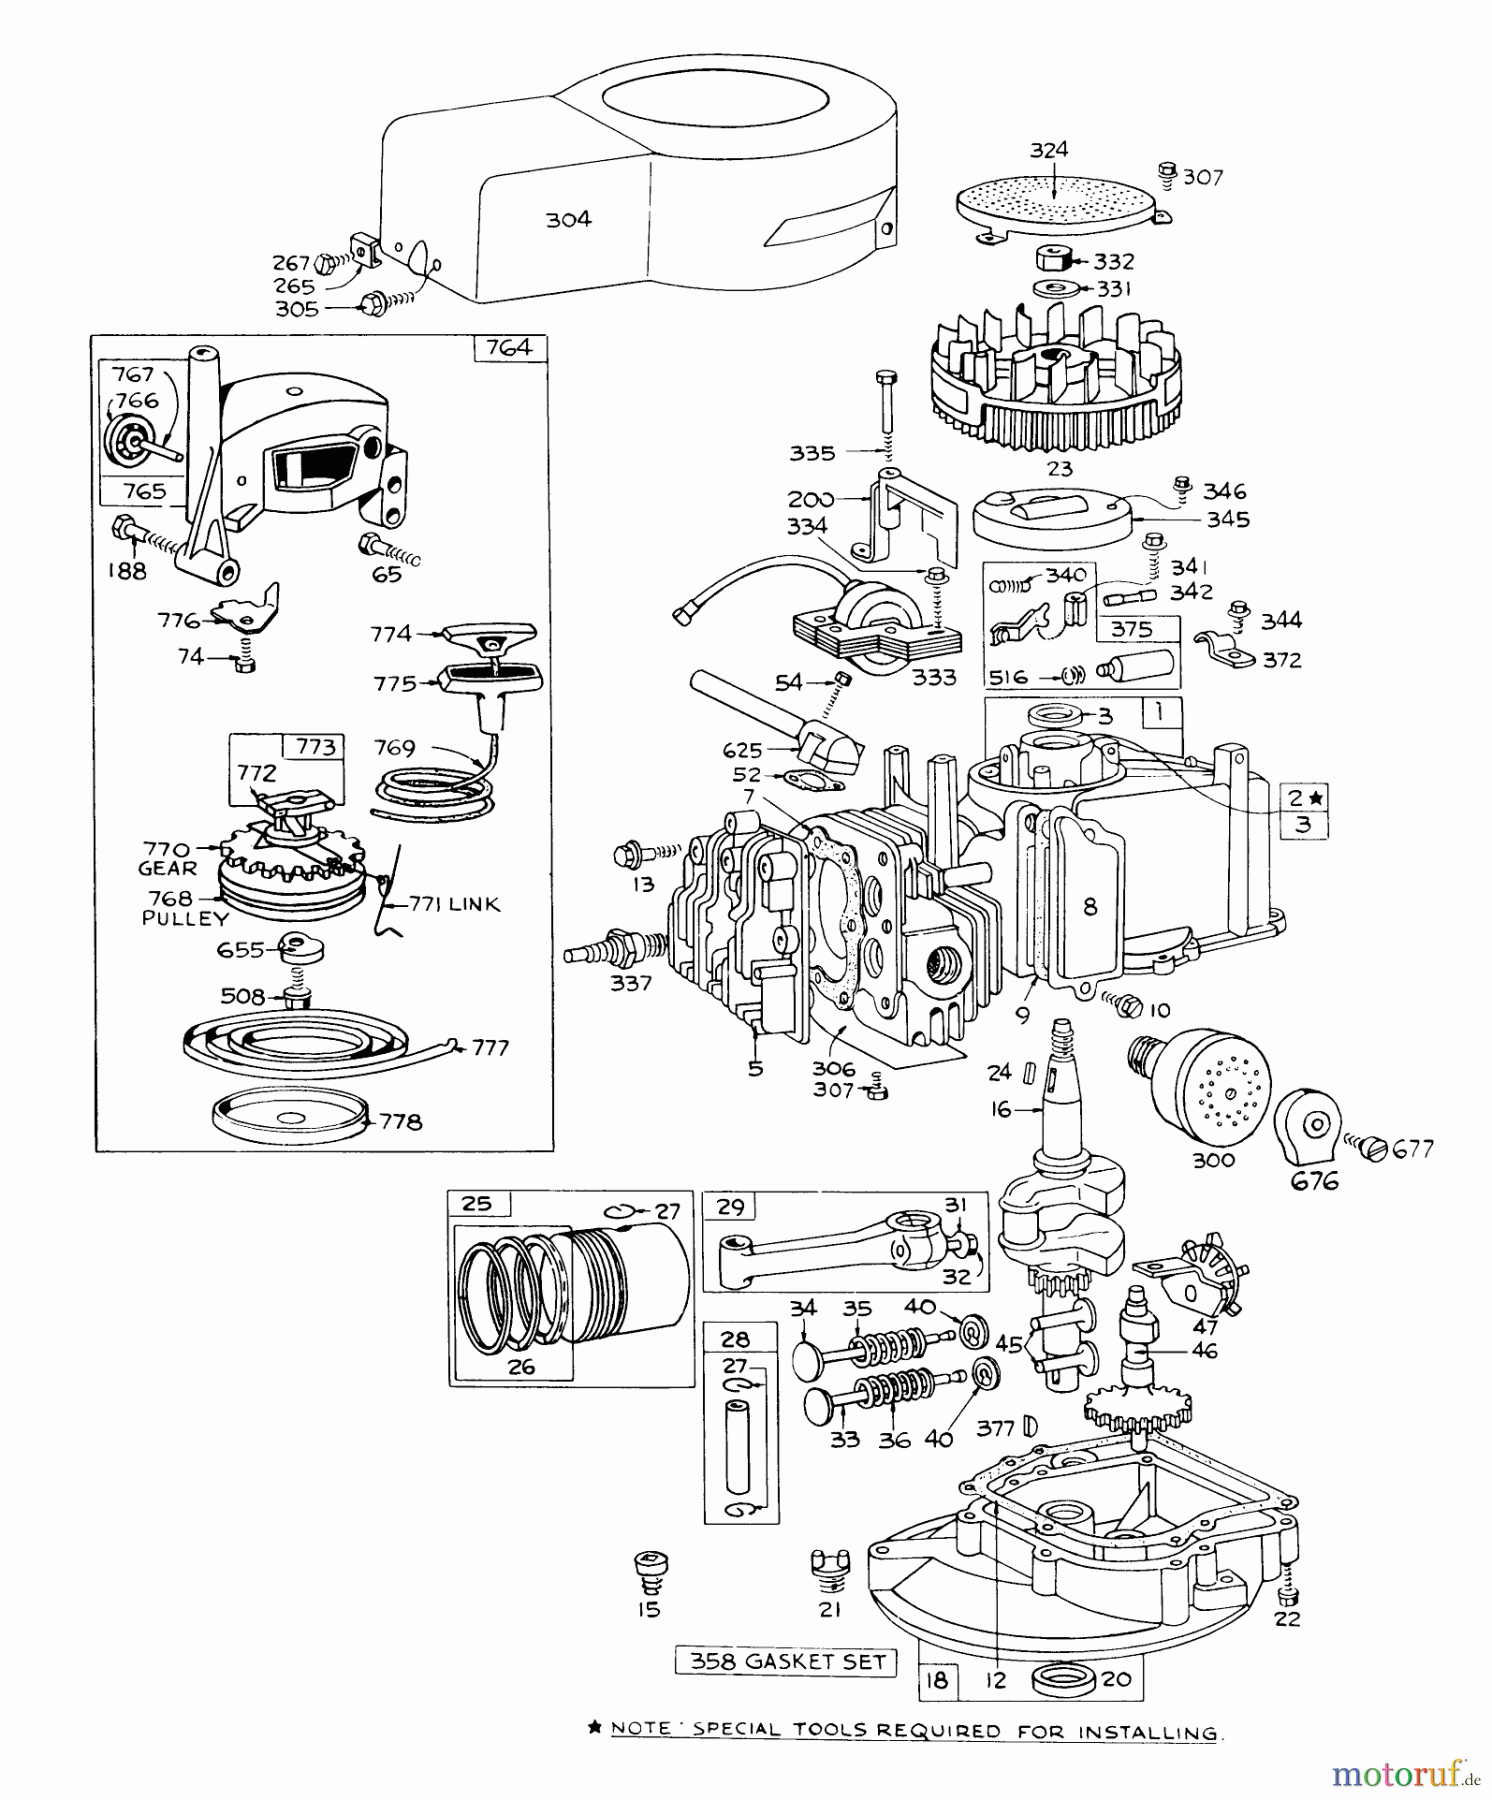  Toro Neu Mowers, Walk-Behind Seite 1 16073 - Toro Whirlwind Lawnmower, 1973 (3000001-3999999) ENGINE BRIGGS & STRATTON - MODEL 92508-0844-01 FOR 19